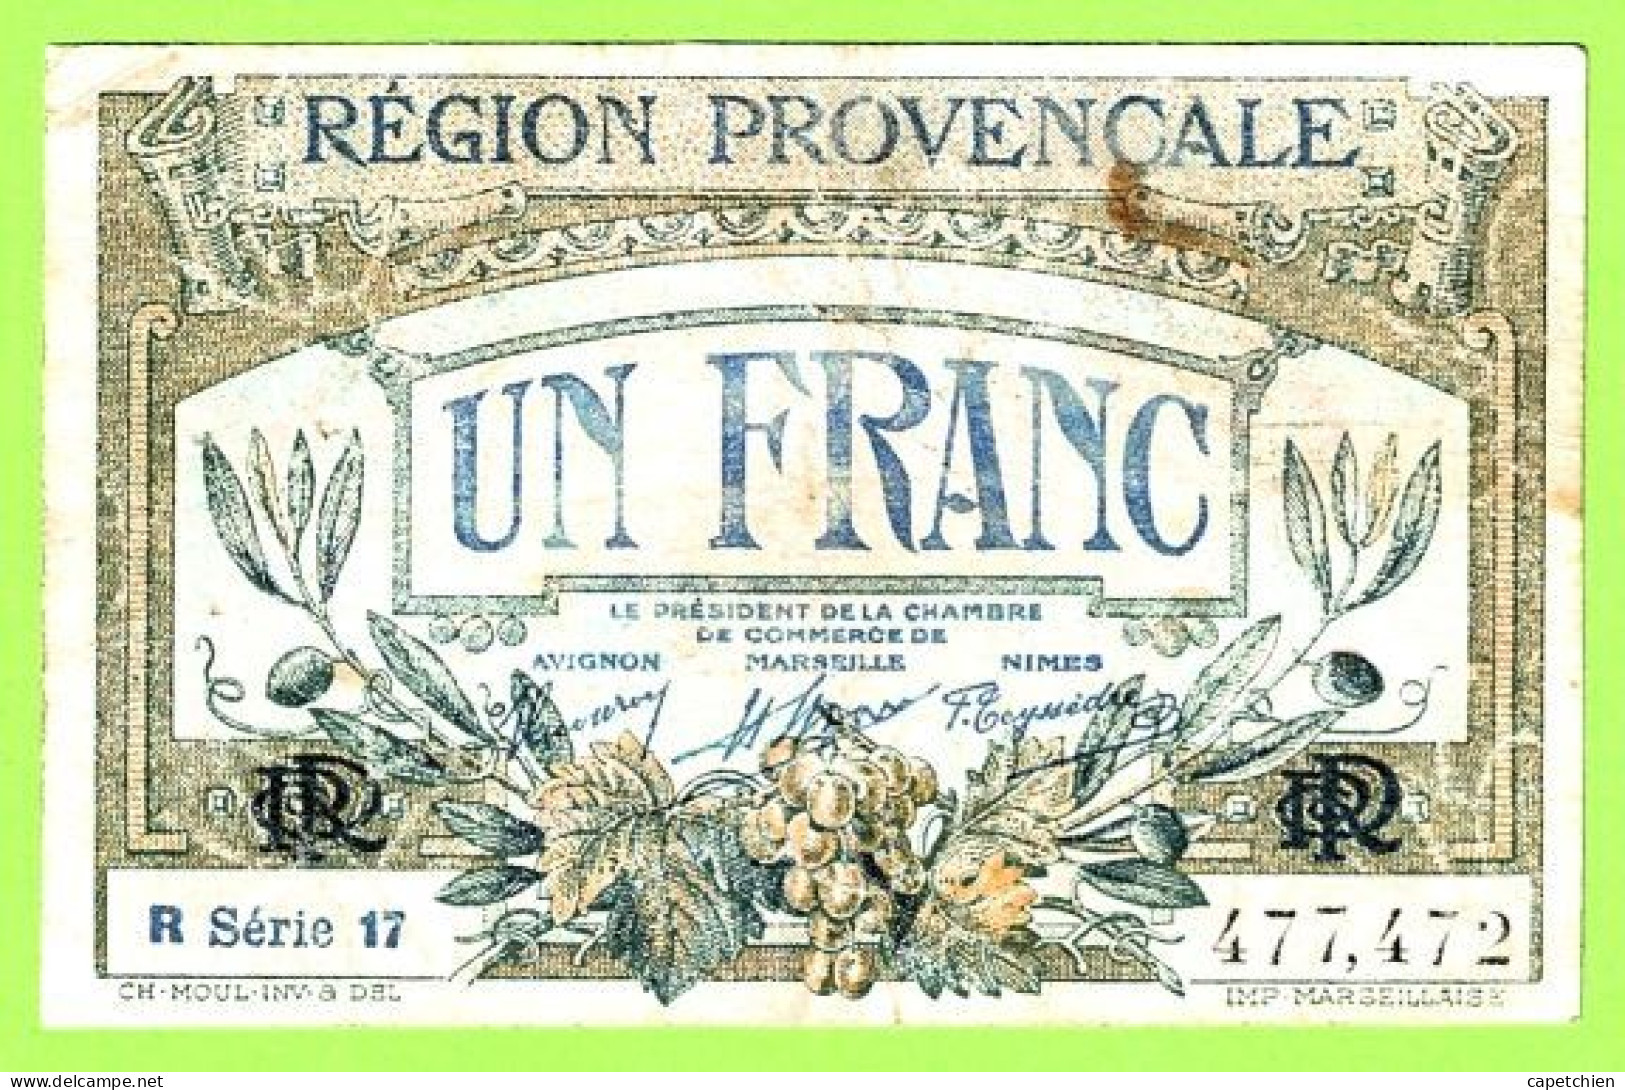 FRANCE / CHAMBRE De COMMERCE / REGION PROVENCALE / 1 FRANC / N° 477472 / R  SERIE 17 - Chambre De Commerce